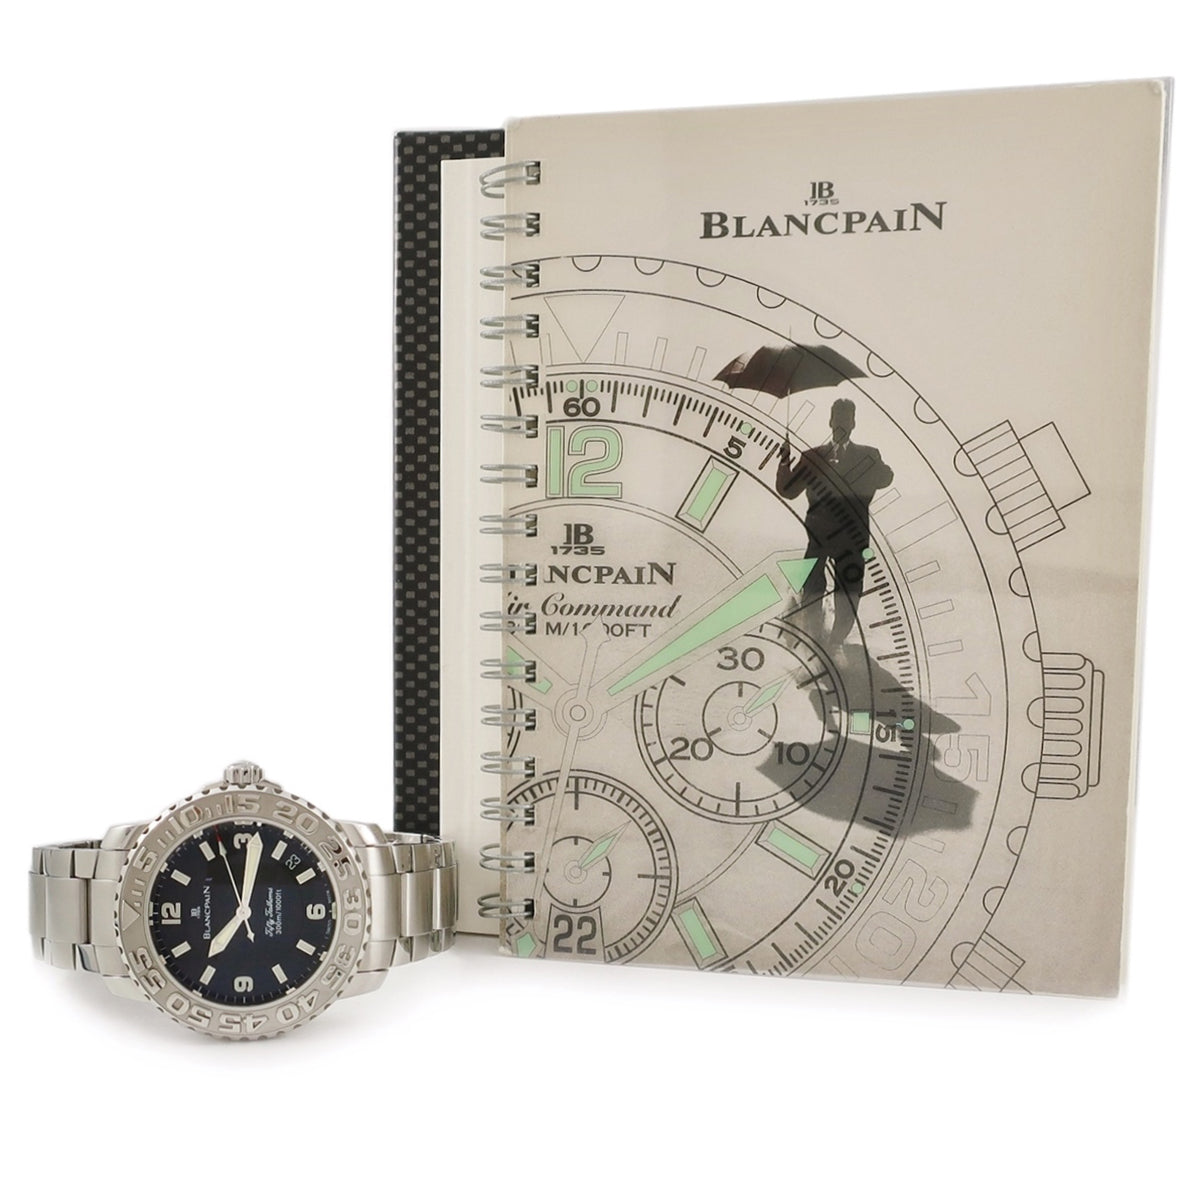 ブランパン BLANCPAIN フィフティファゾムス トリロジー 2200-1130-71 自動巻き メンズ 黒 ダイバーズ 100時間パワーリザーブ